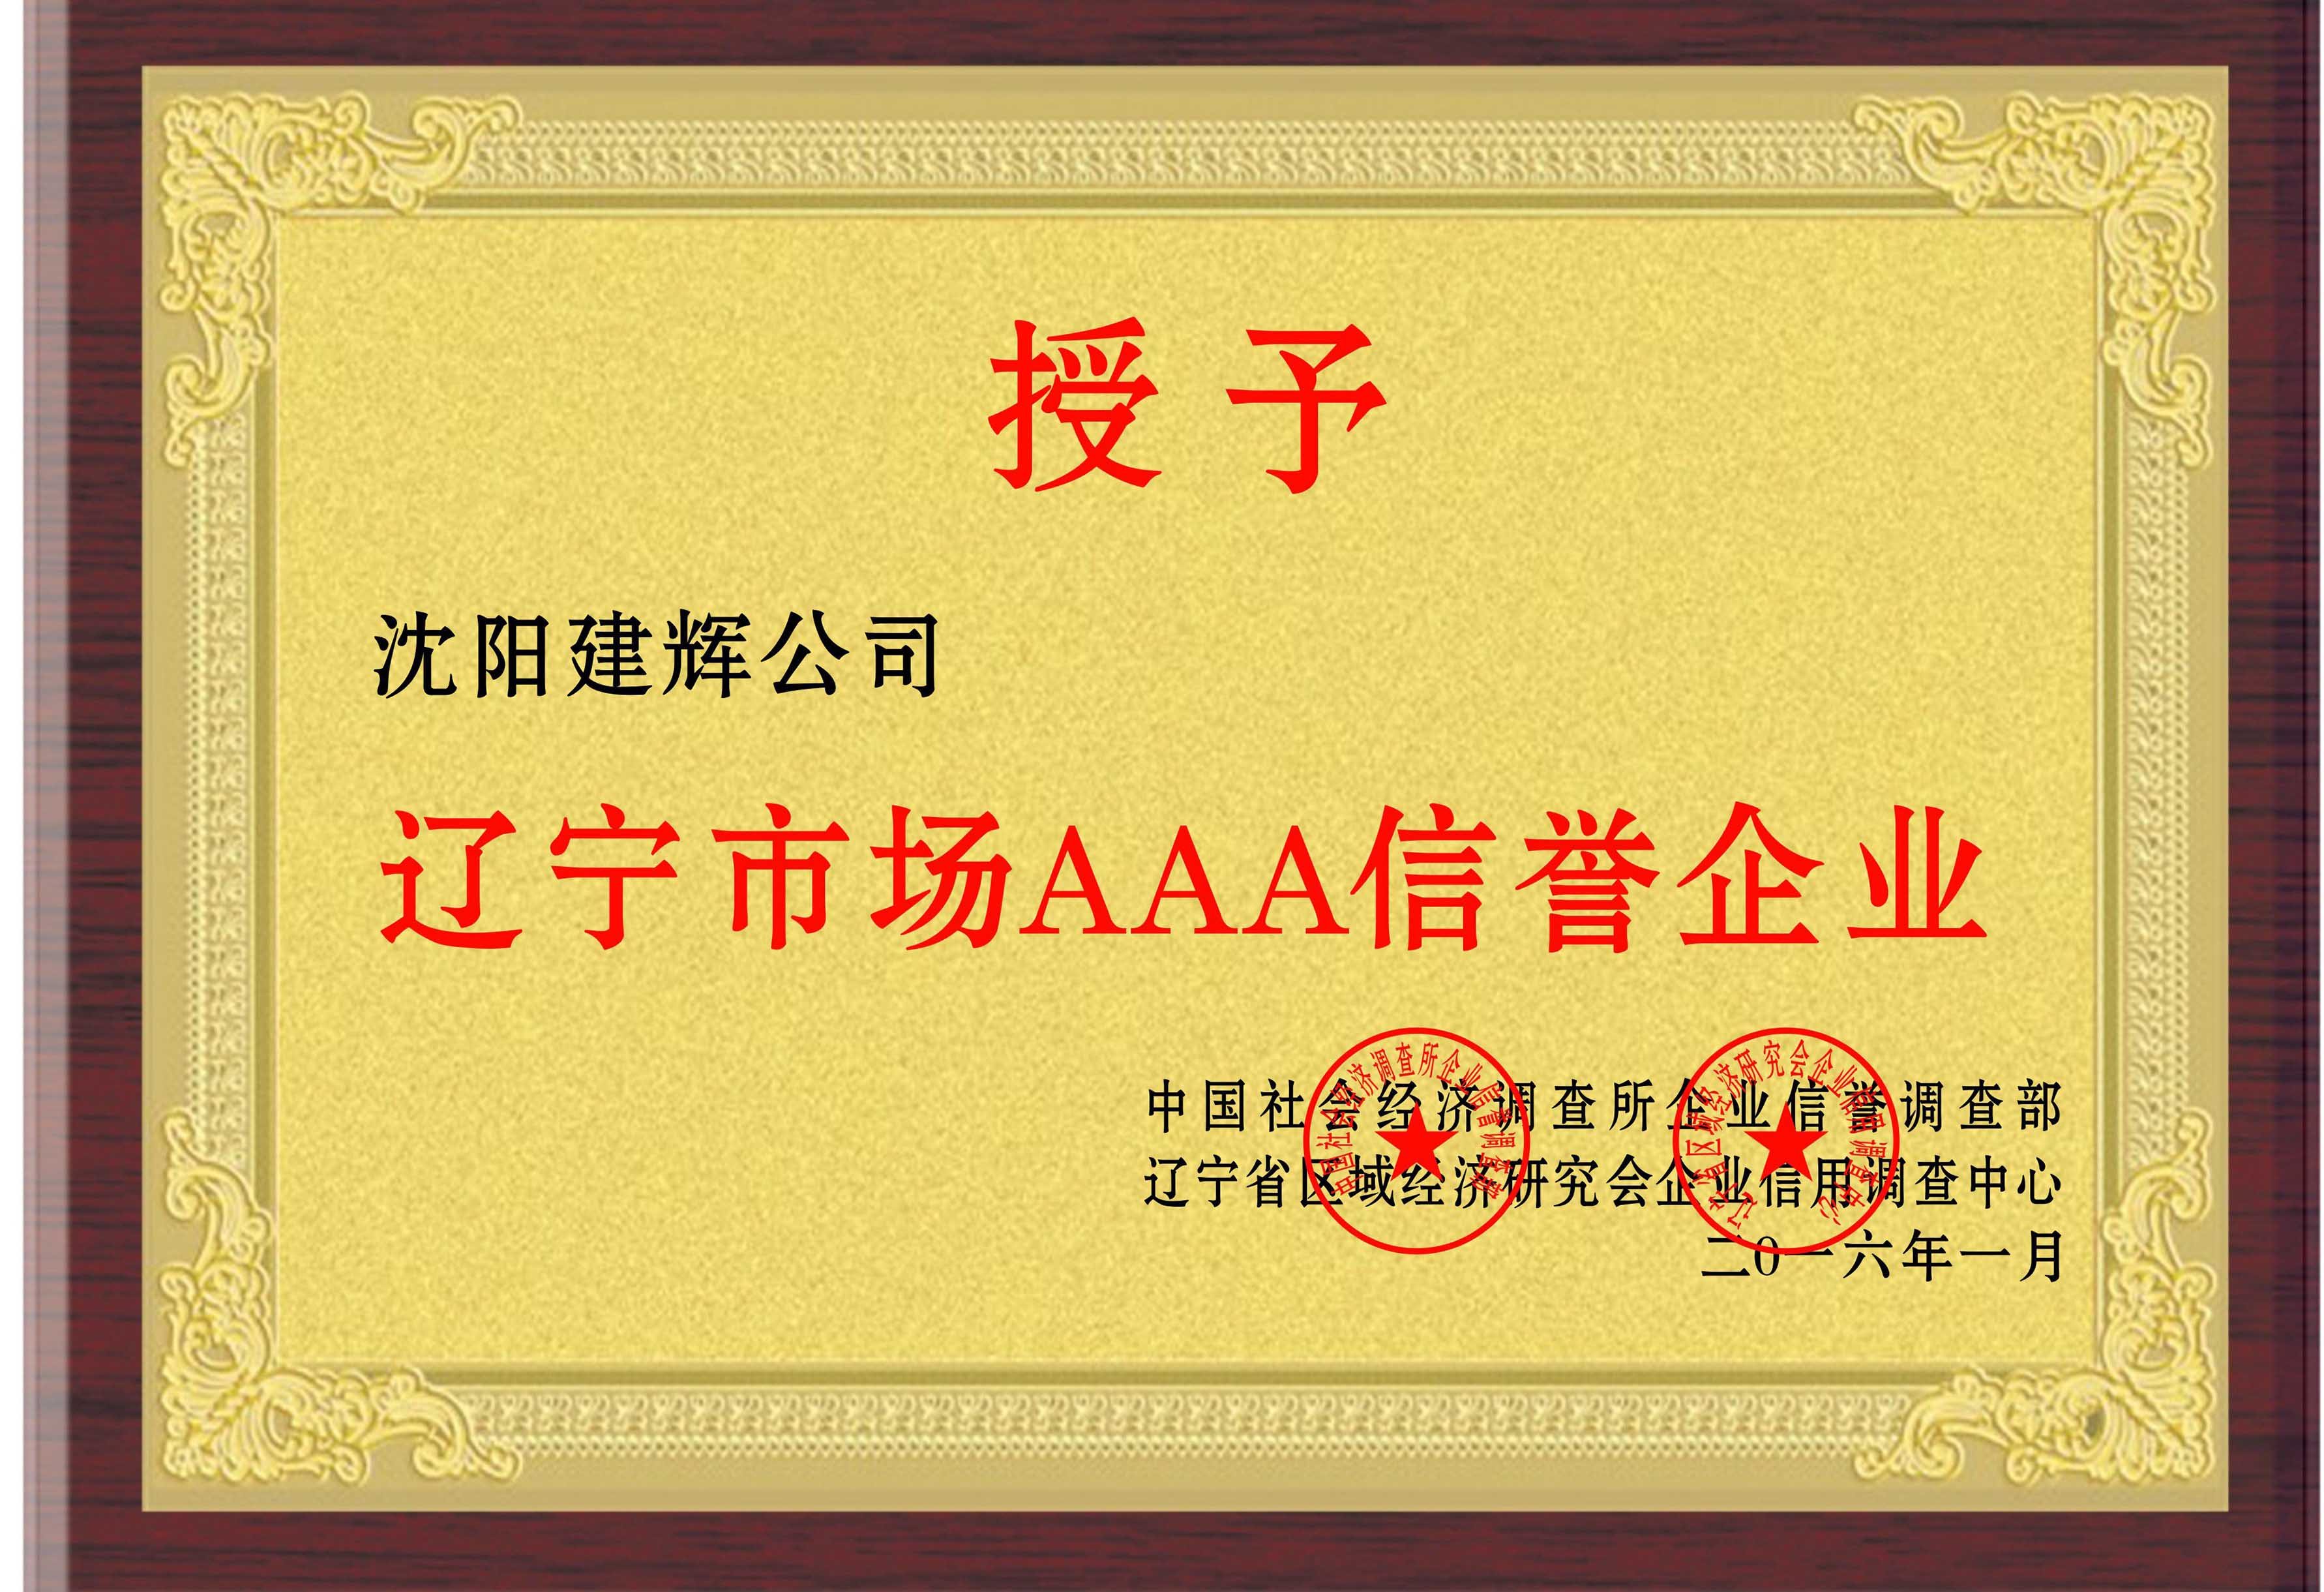 遼寧市場AAA信譽企業榮譽證書